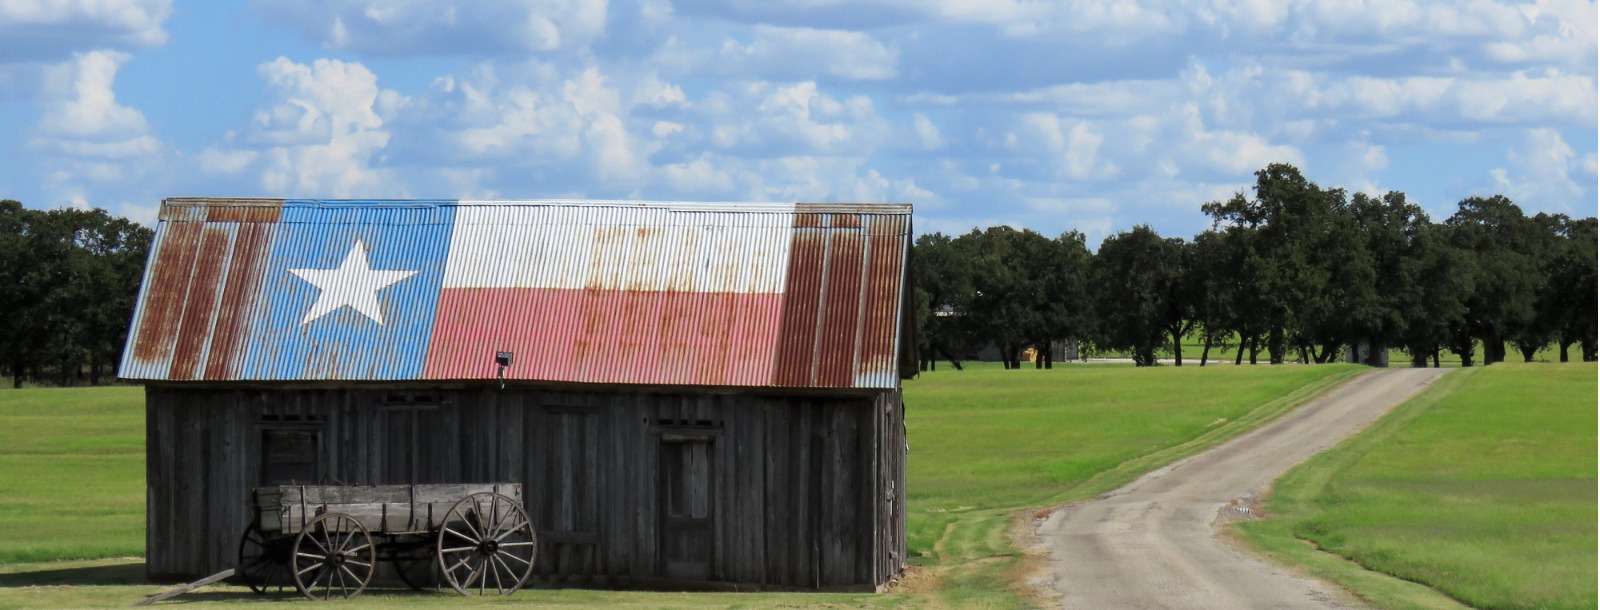 buckboard wagon by a barn